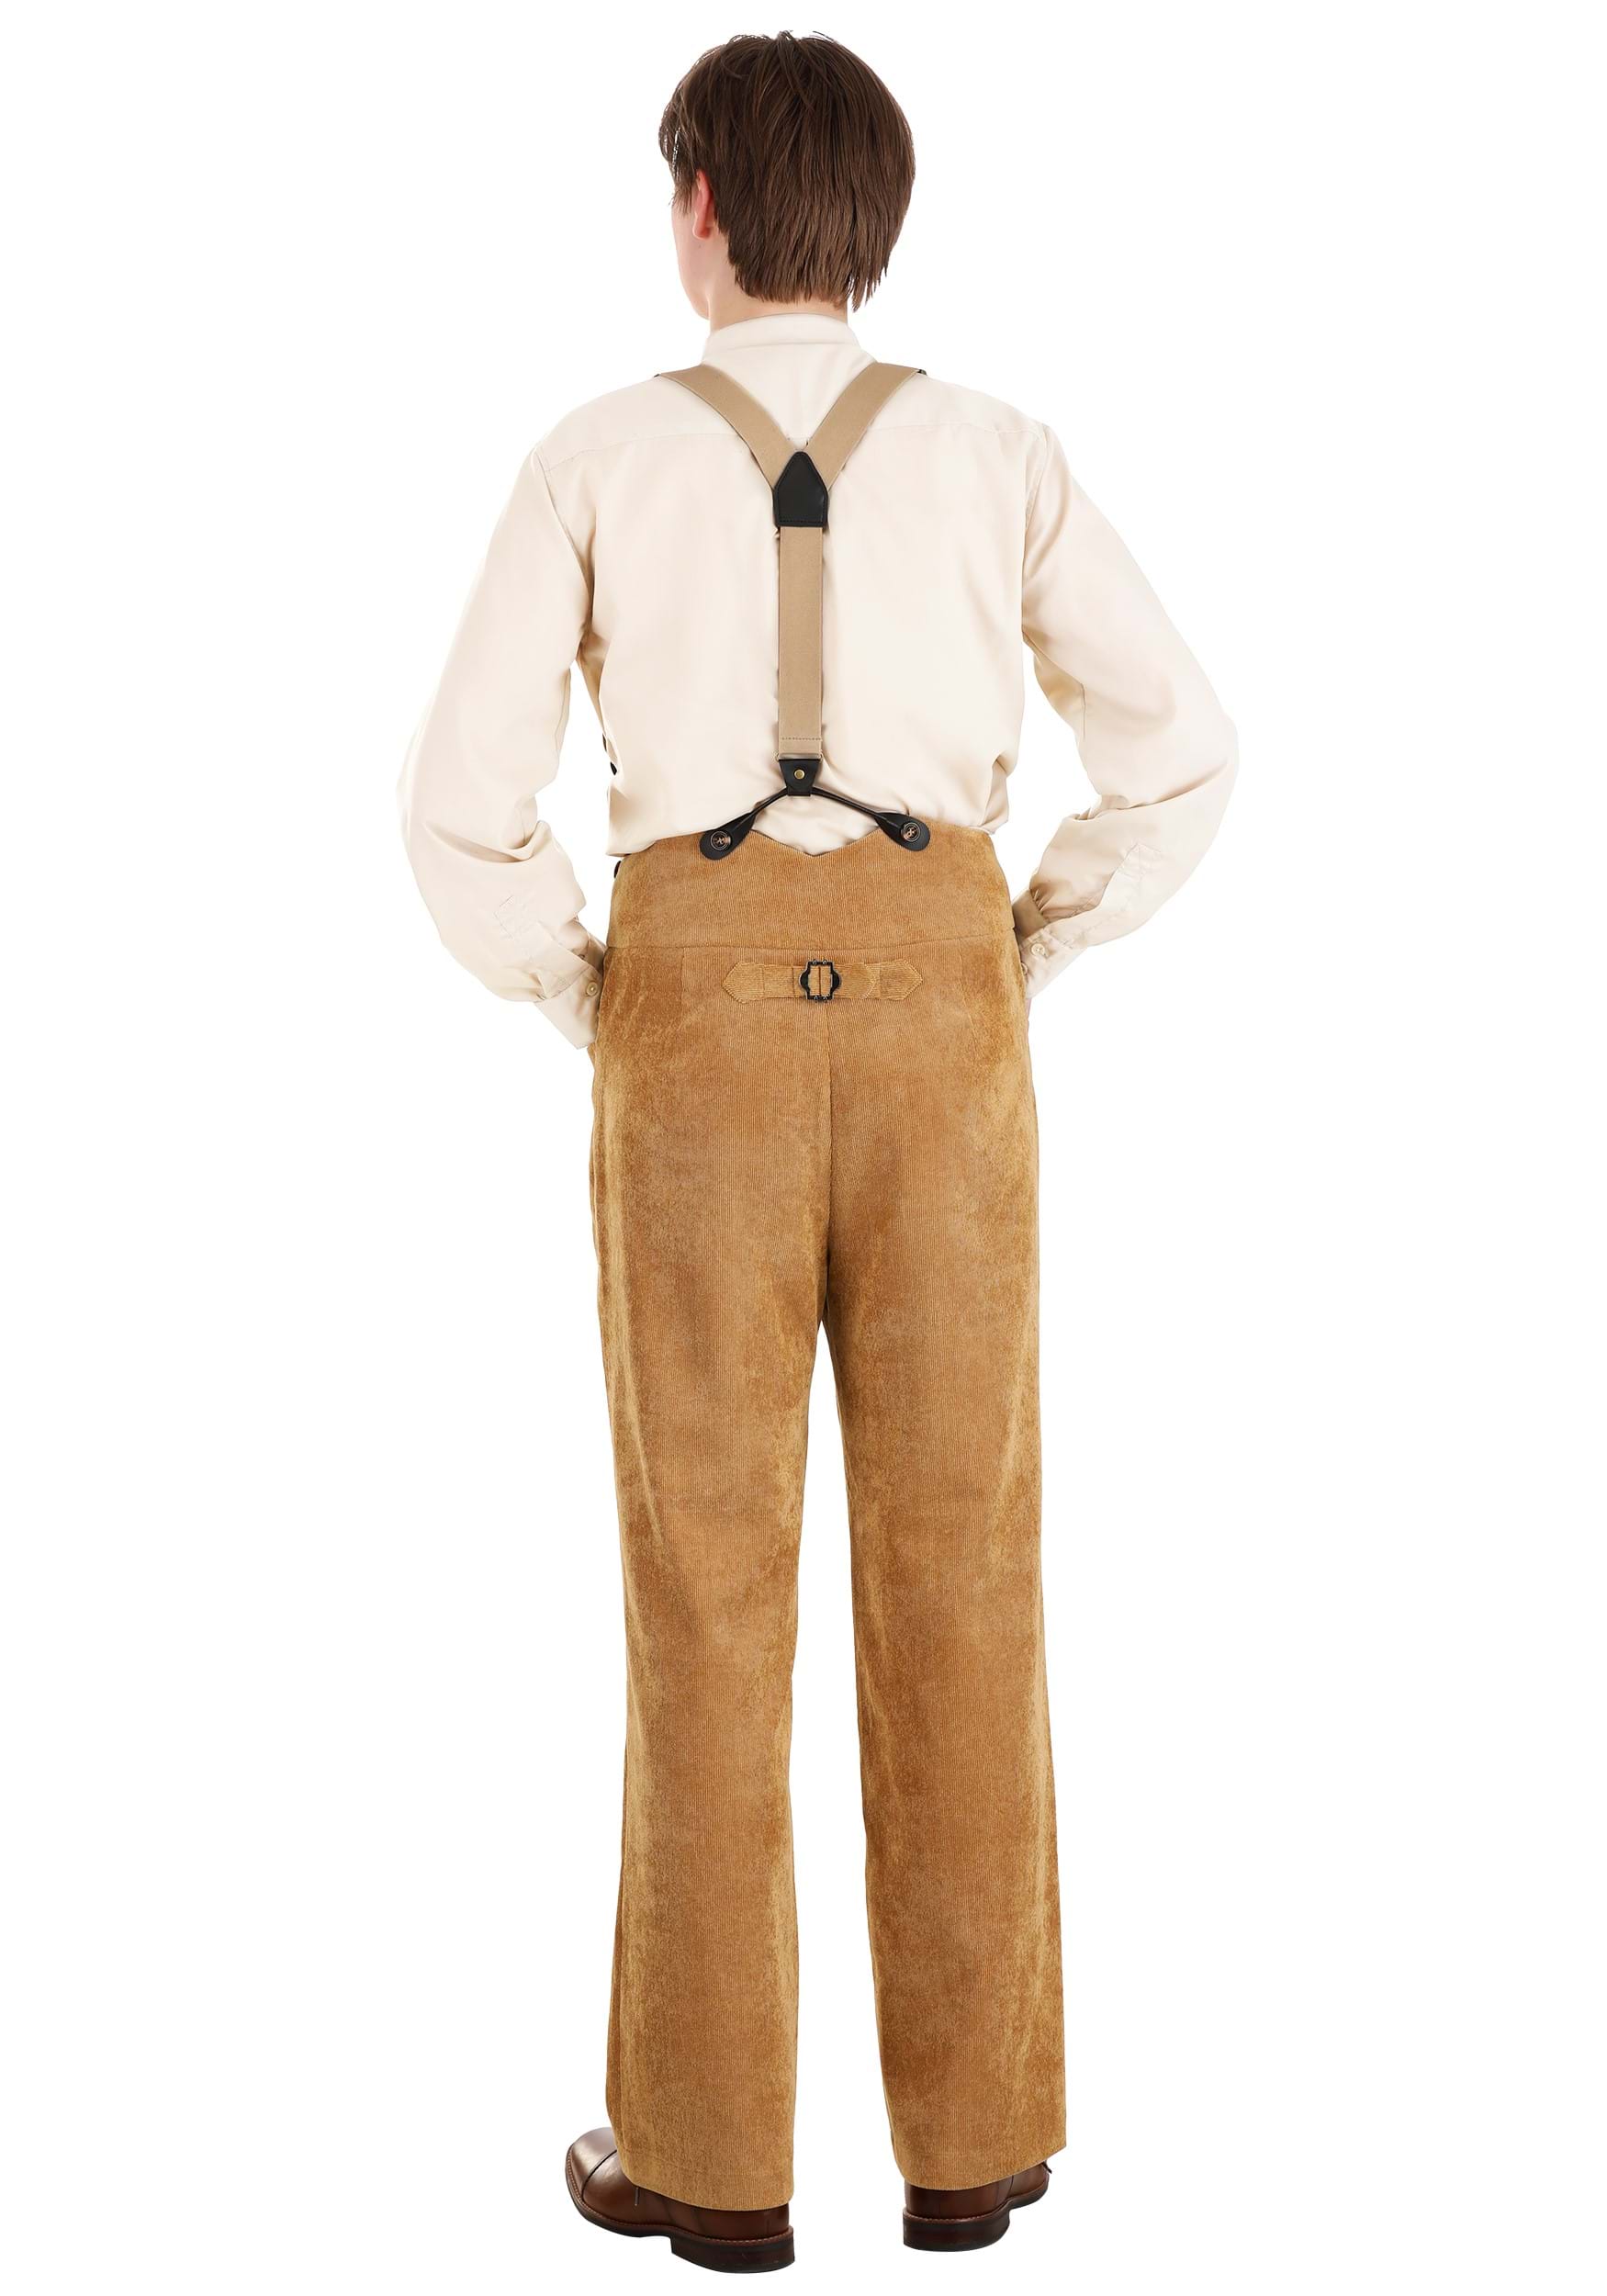 Titanic Jack Men's Costume